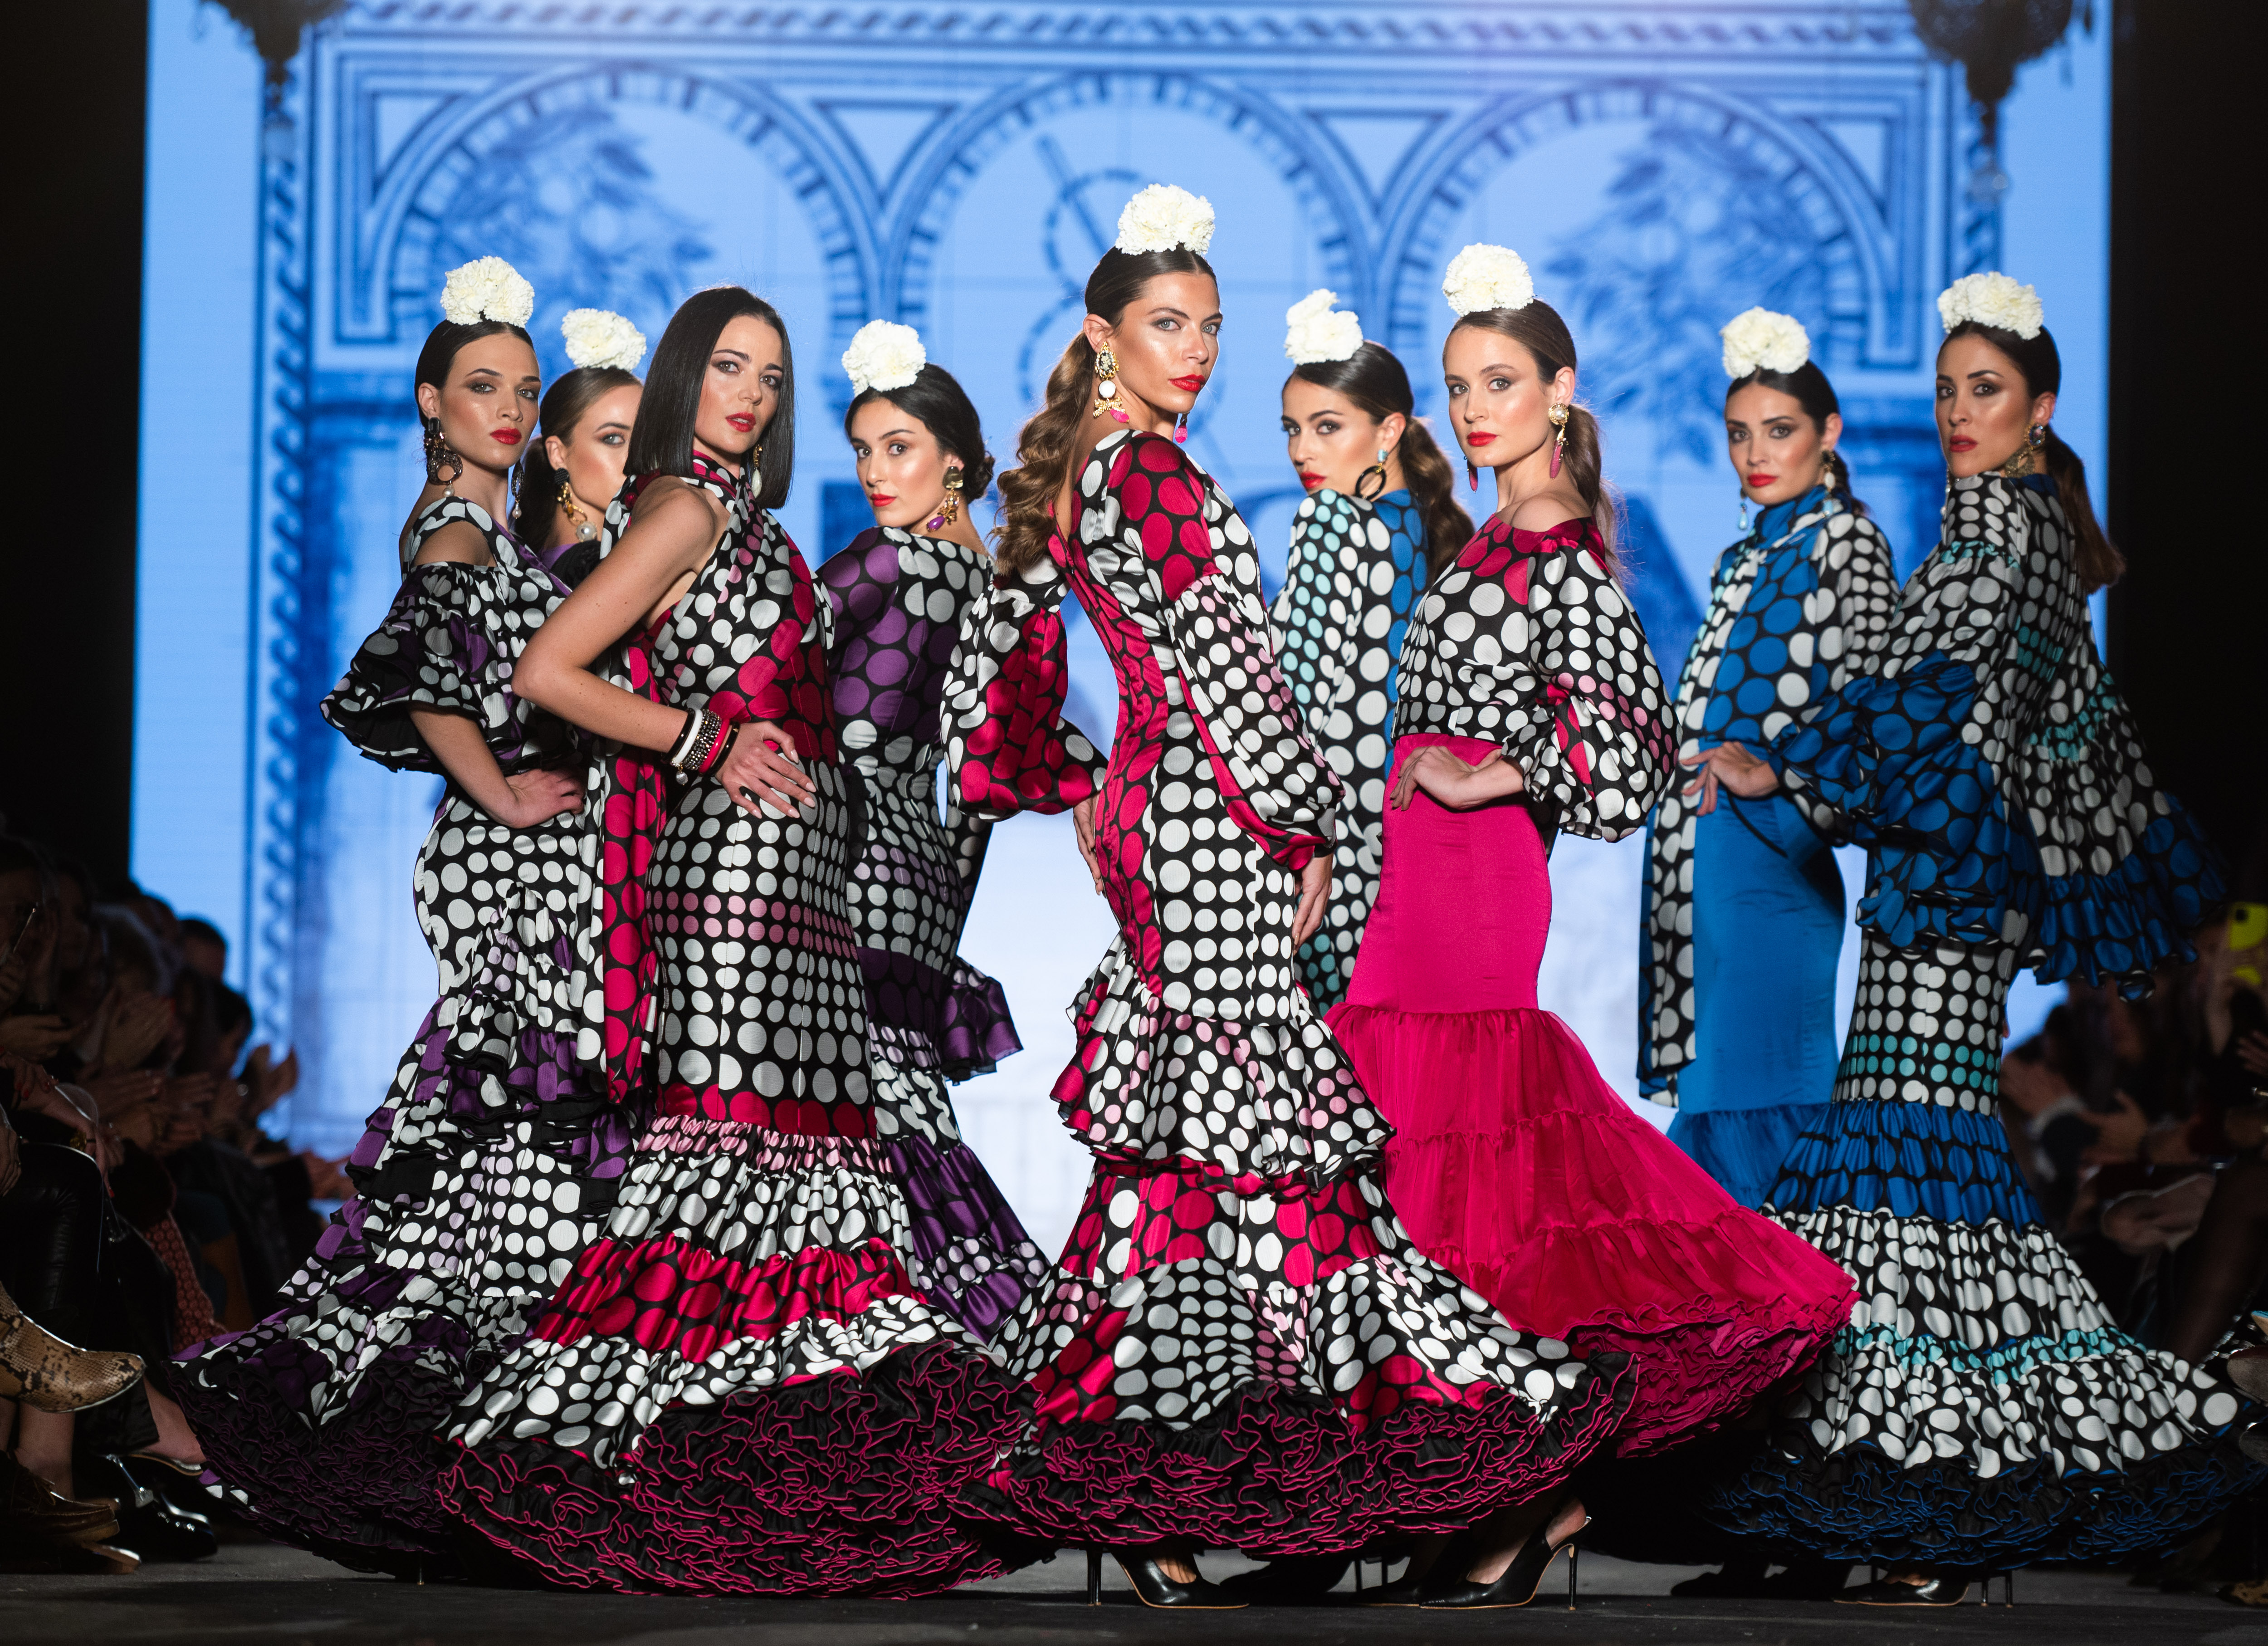 Las ganas de feria se imponen en las dos de moda flamenca de España | Estilo | EL PAÍS